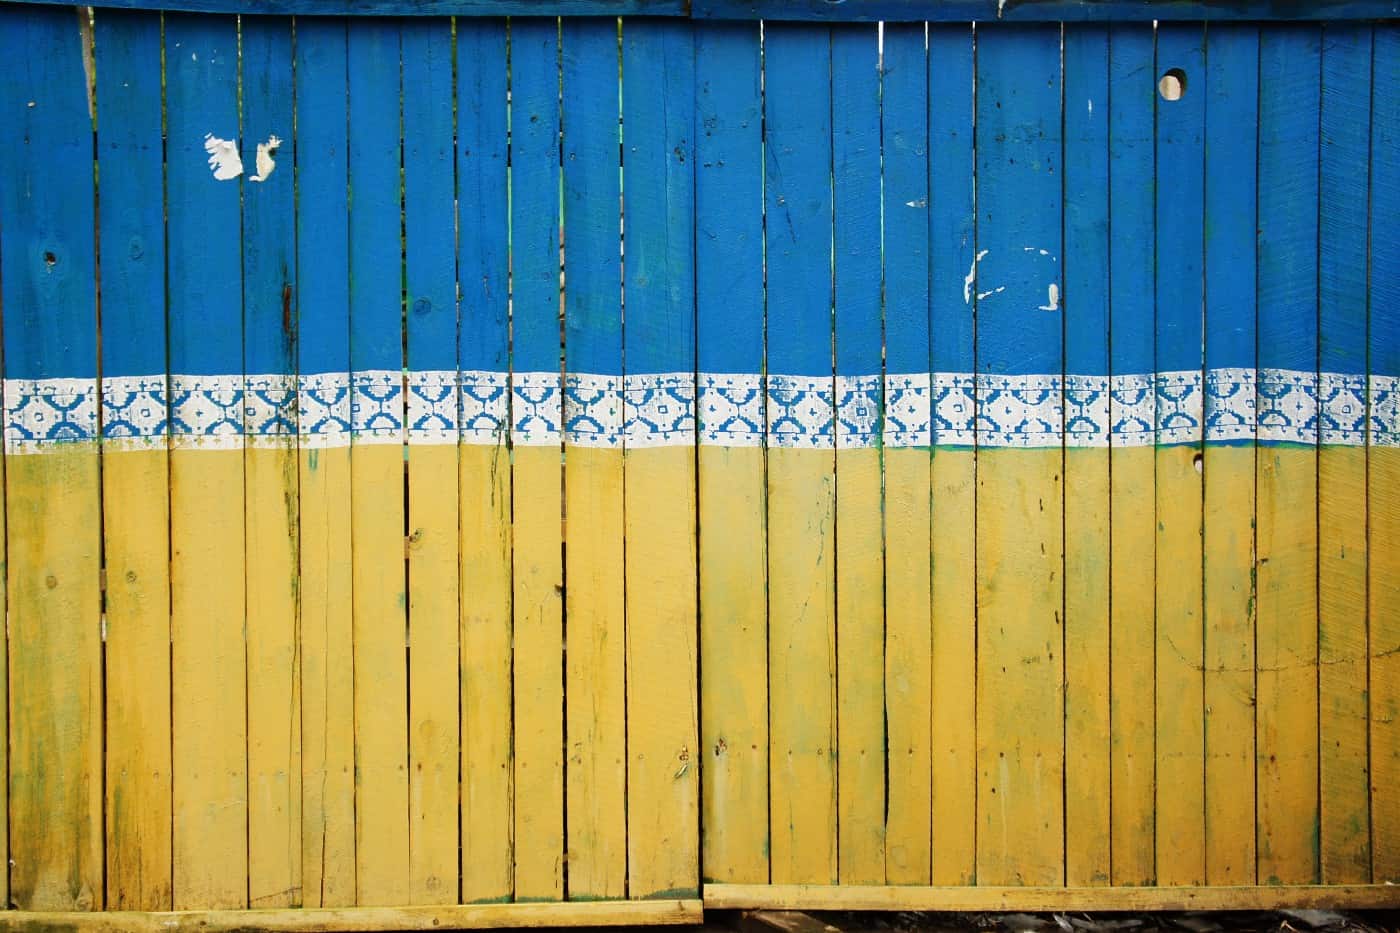 Ukraine flag painted on fence.